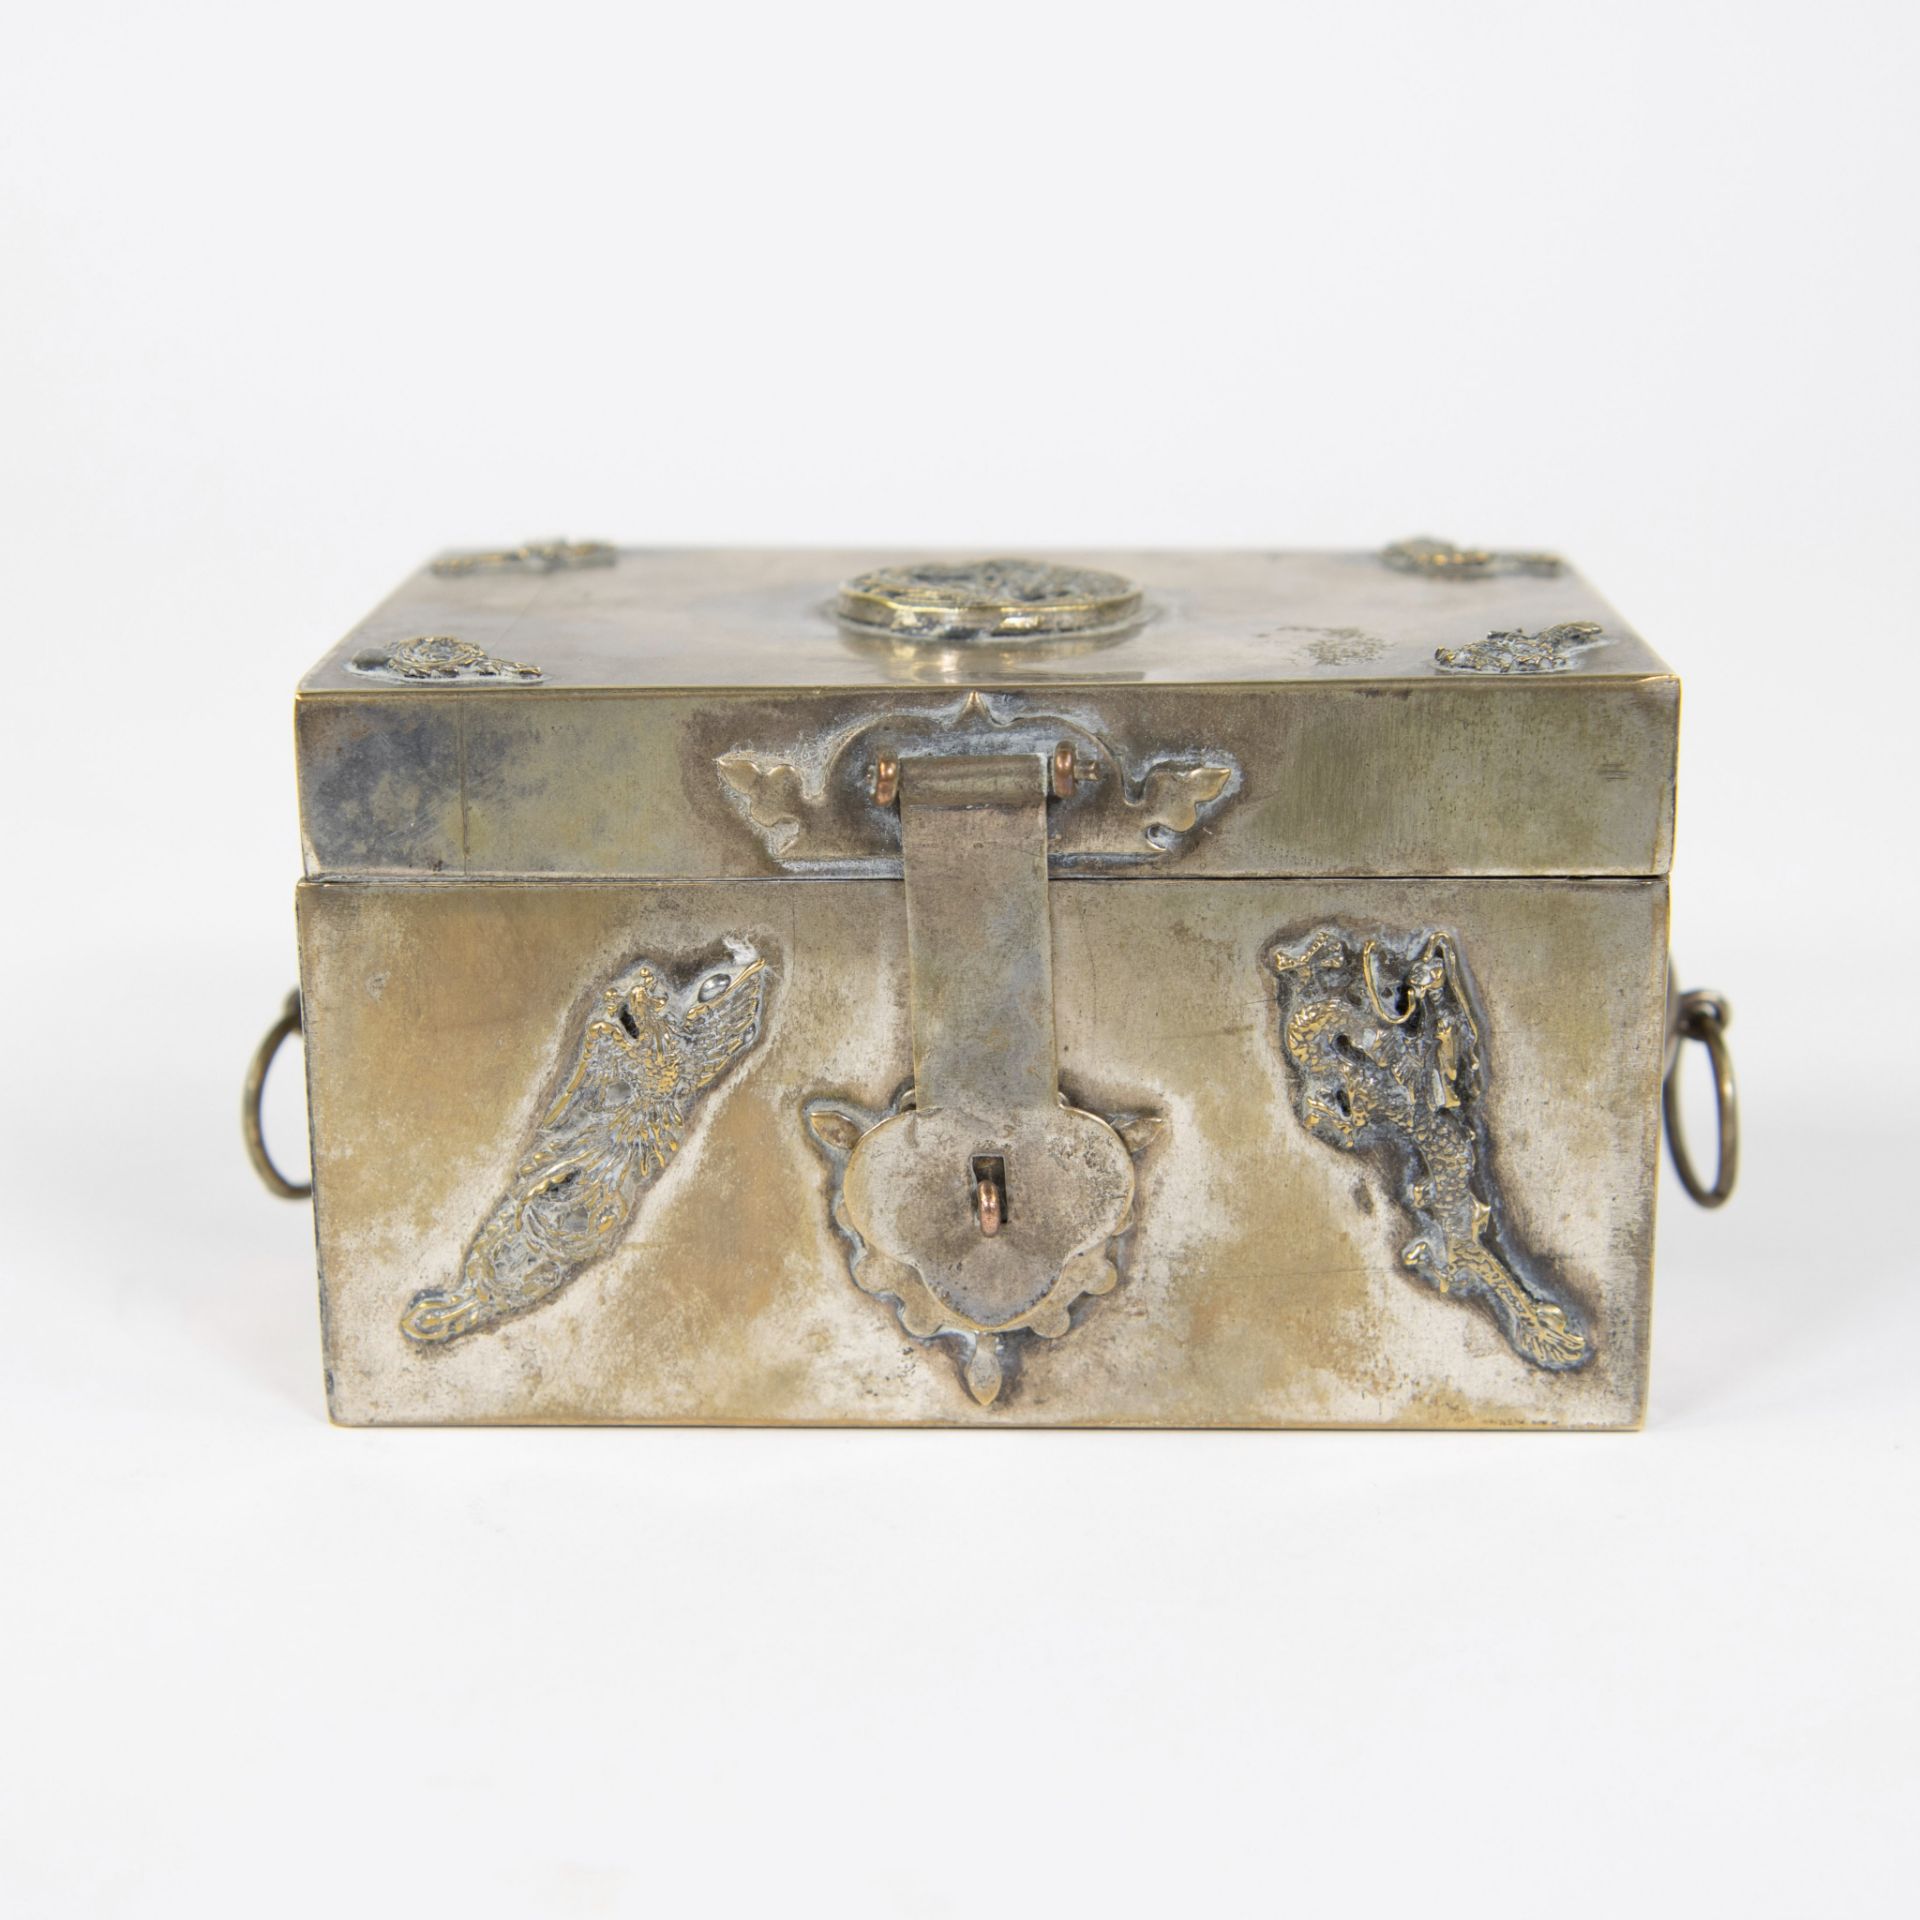 Chinese silver jewelry box